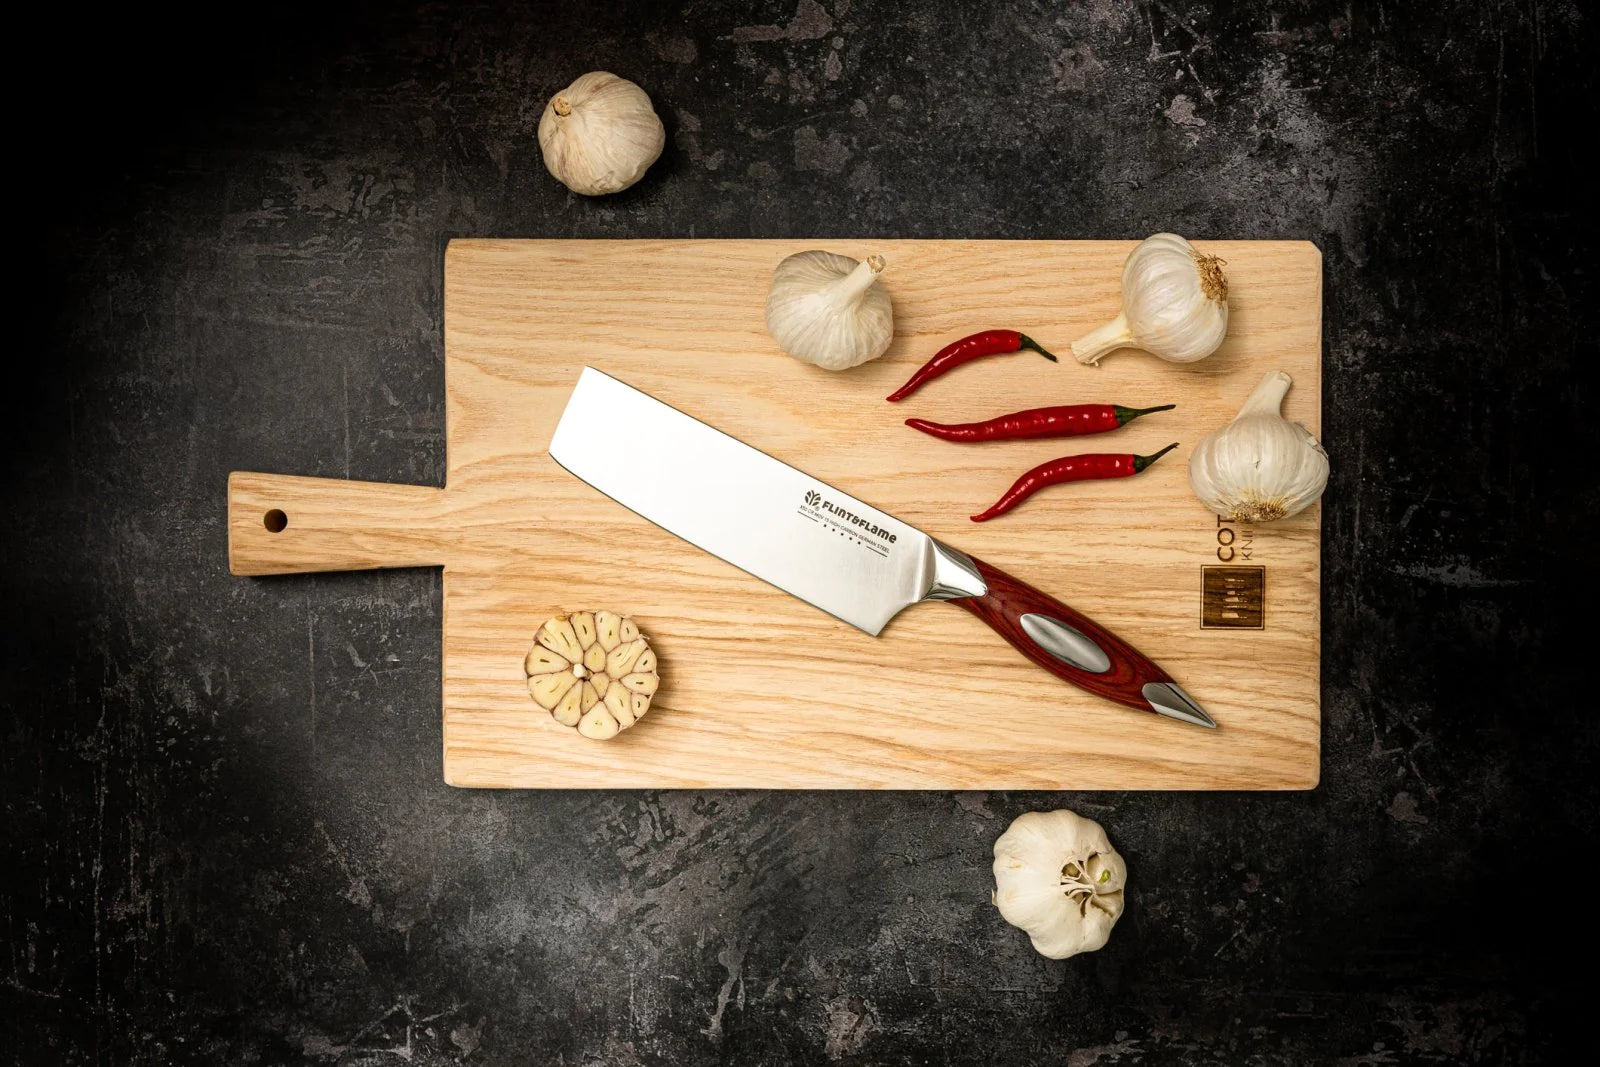 What Is a nakiri knife?